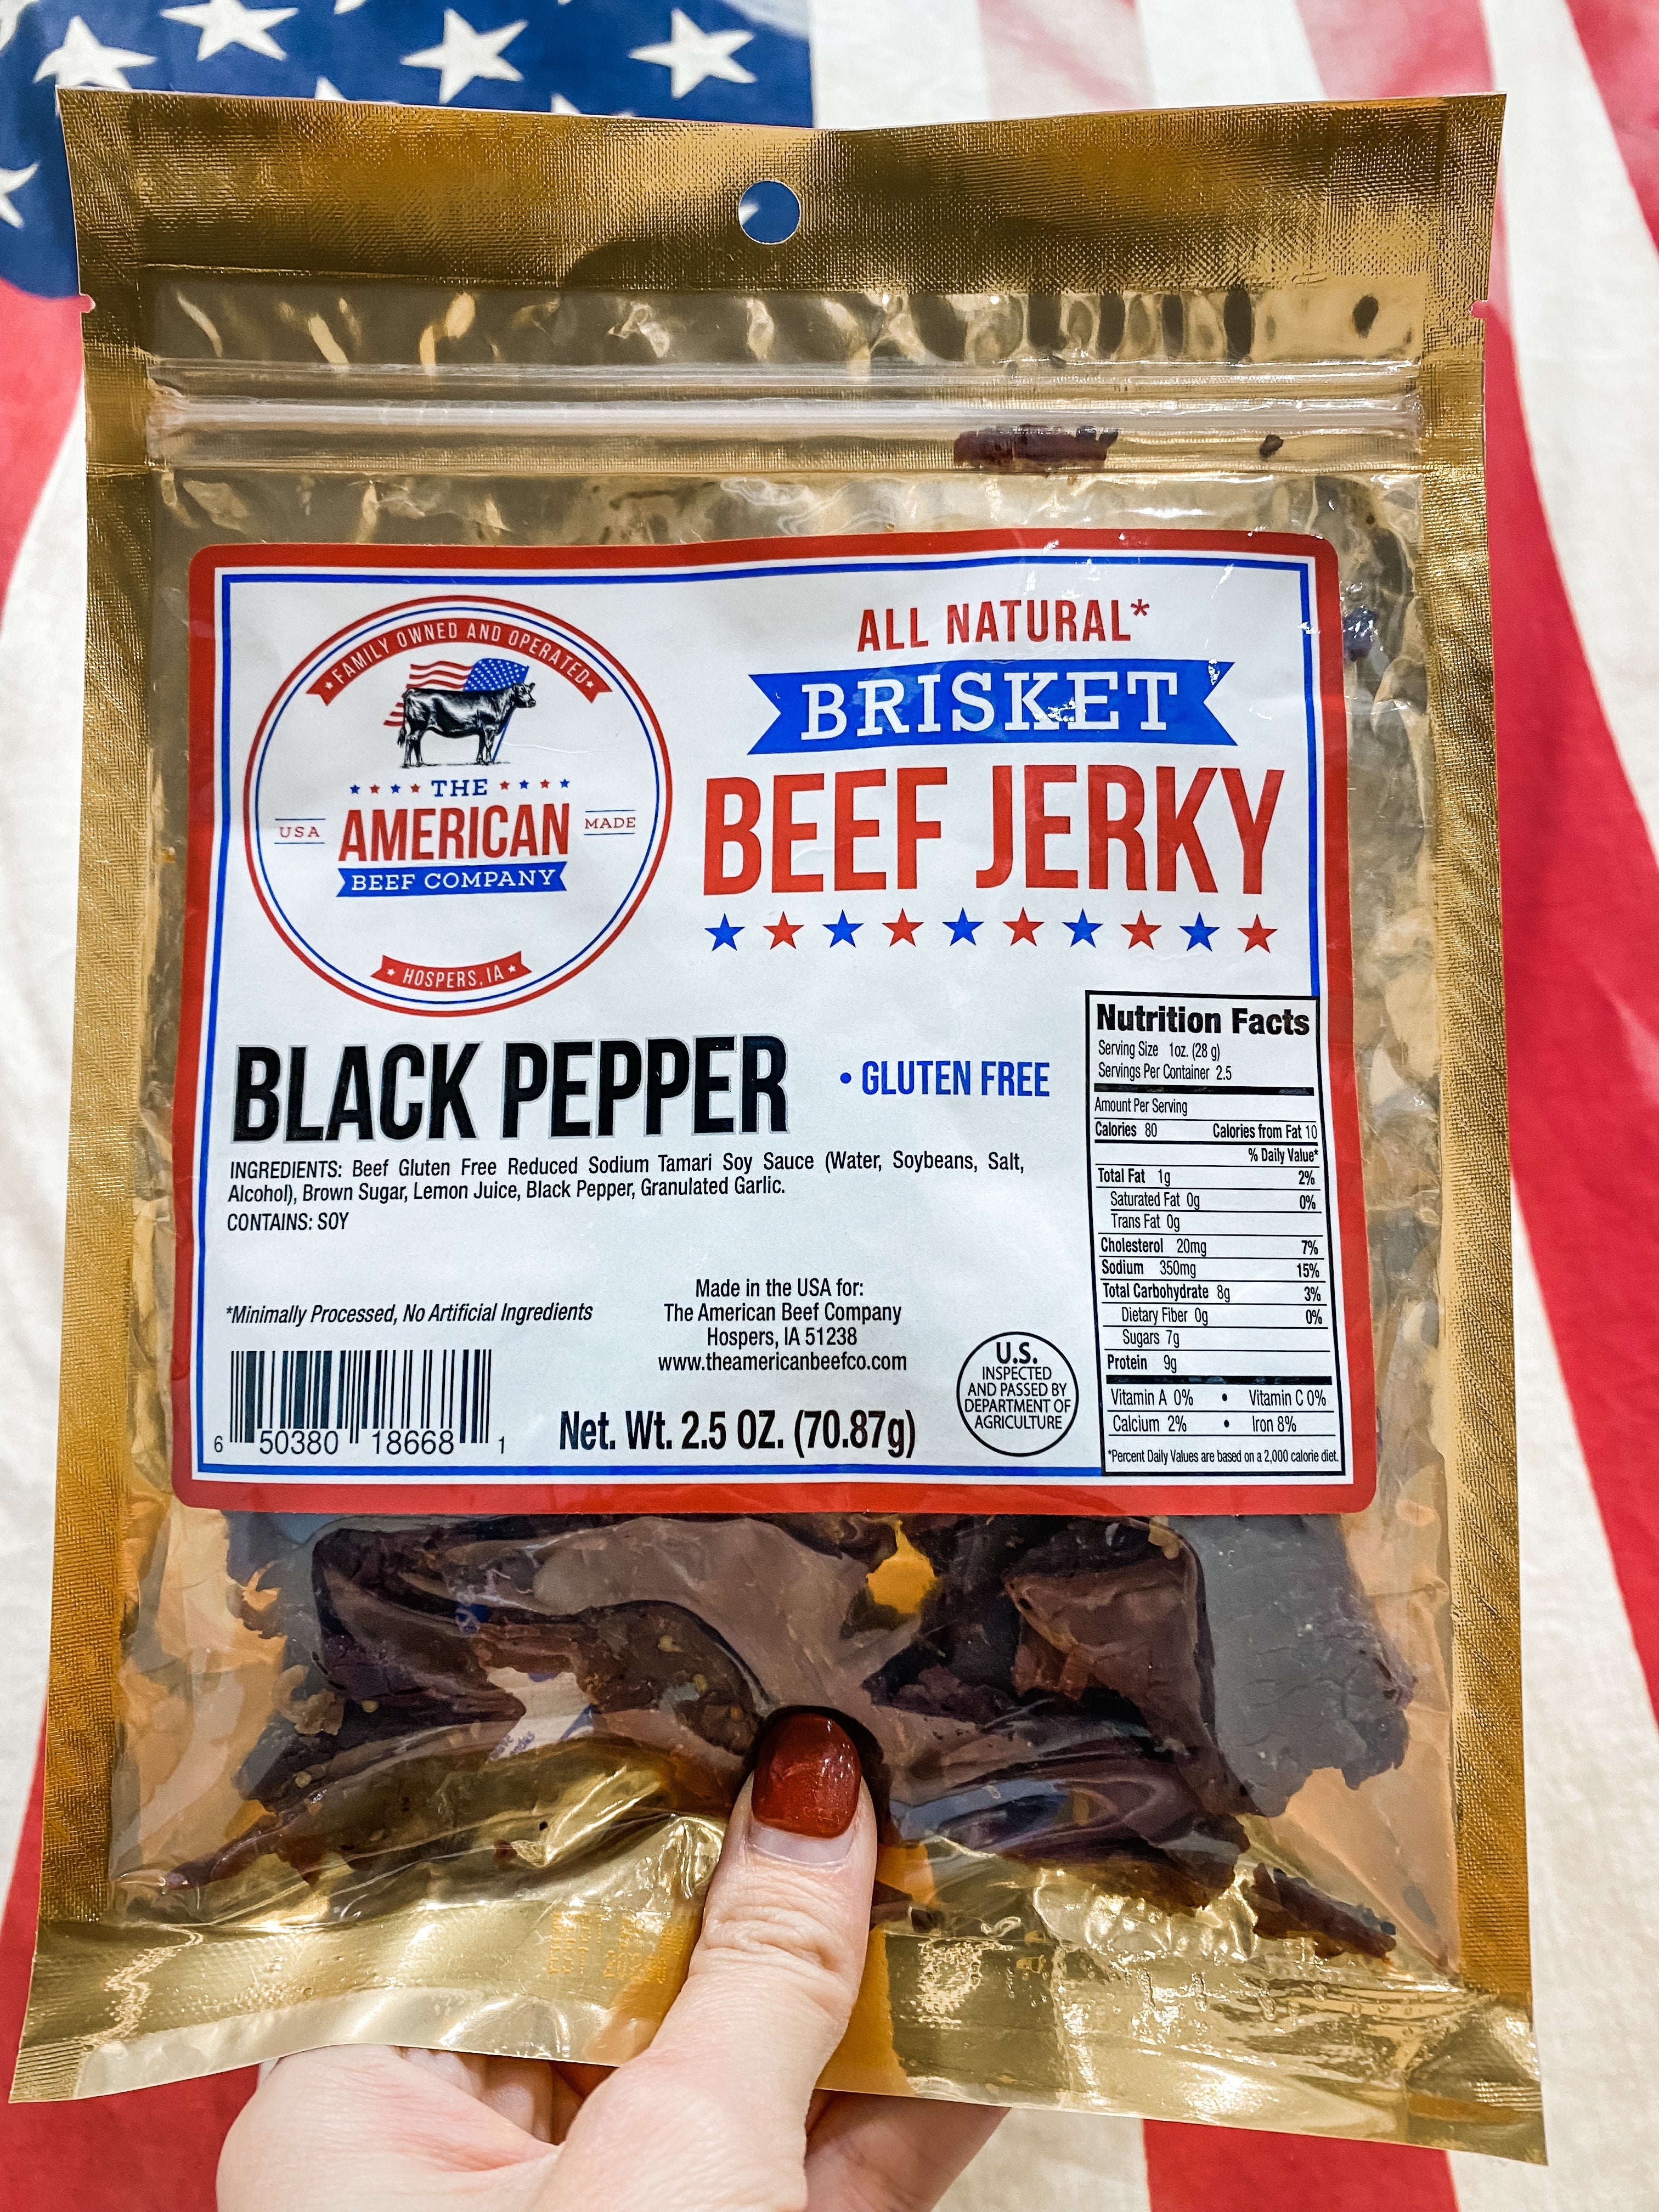 American Beef Company Brisket Beef Jerky black pepper packaging